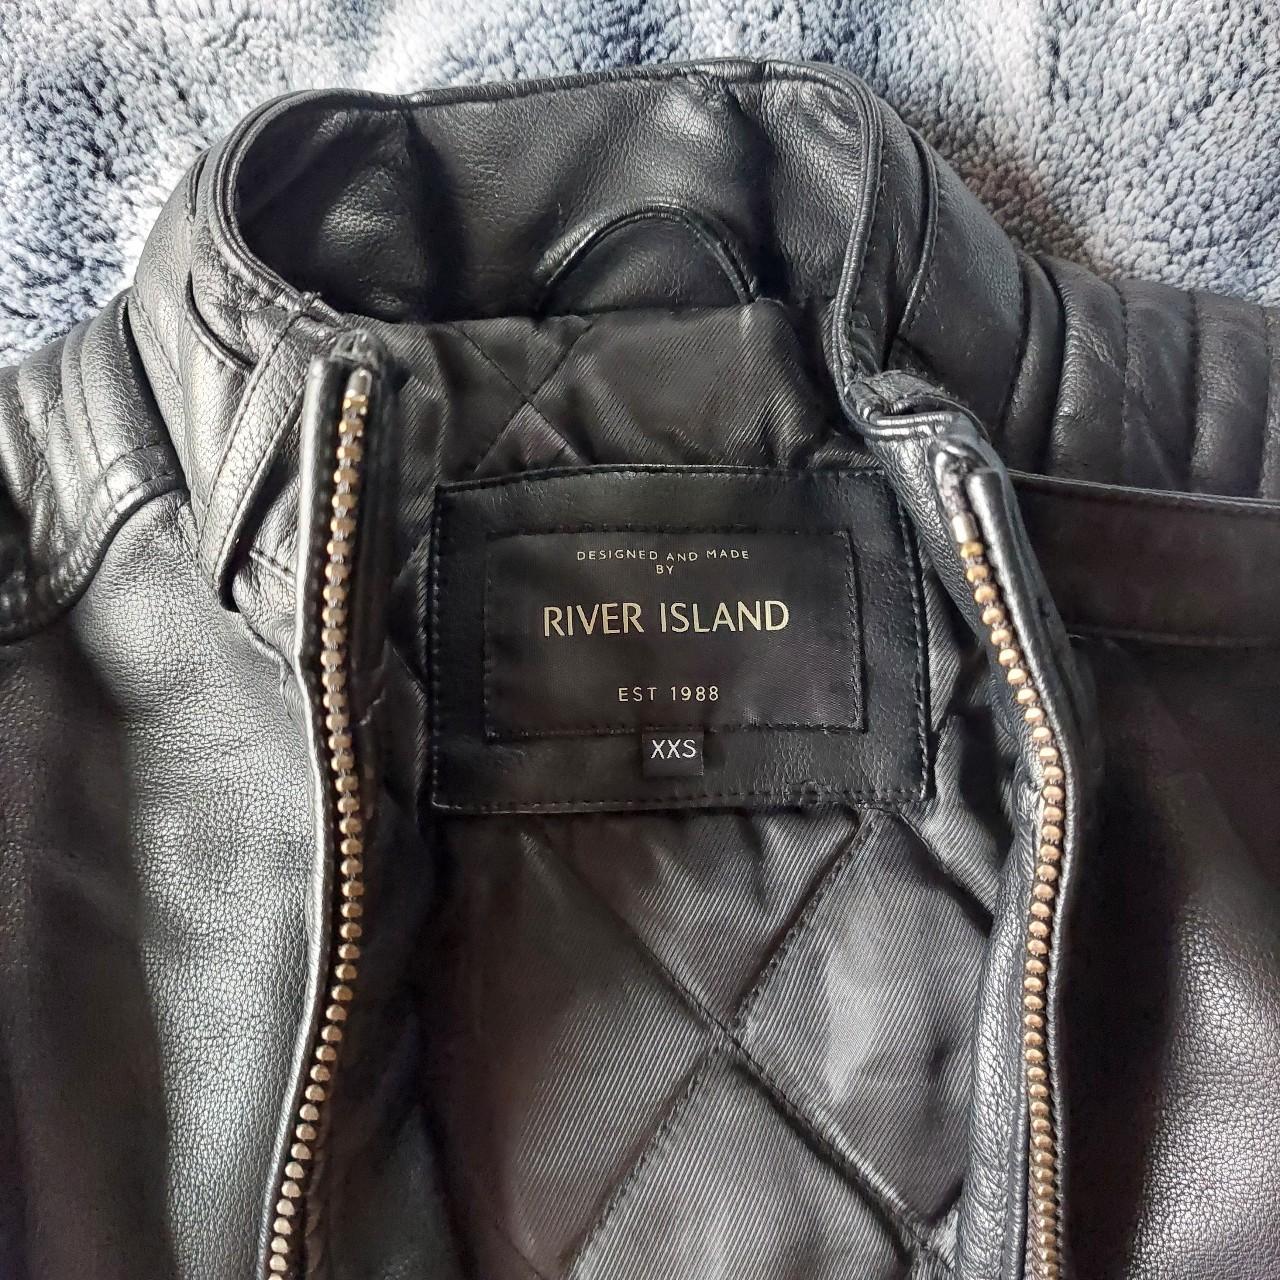 River Island men's faux leather jacket in size xxs... - Depop